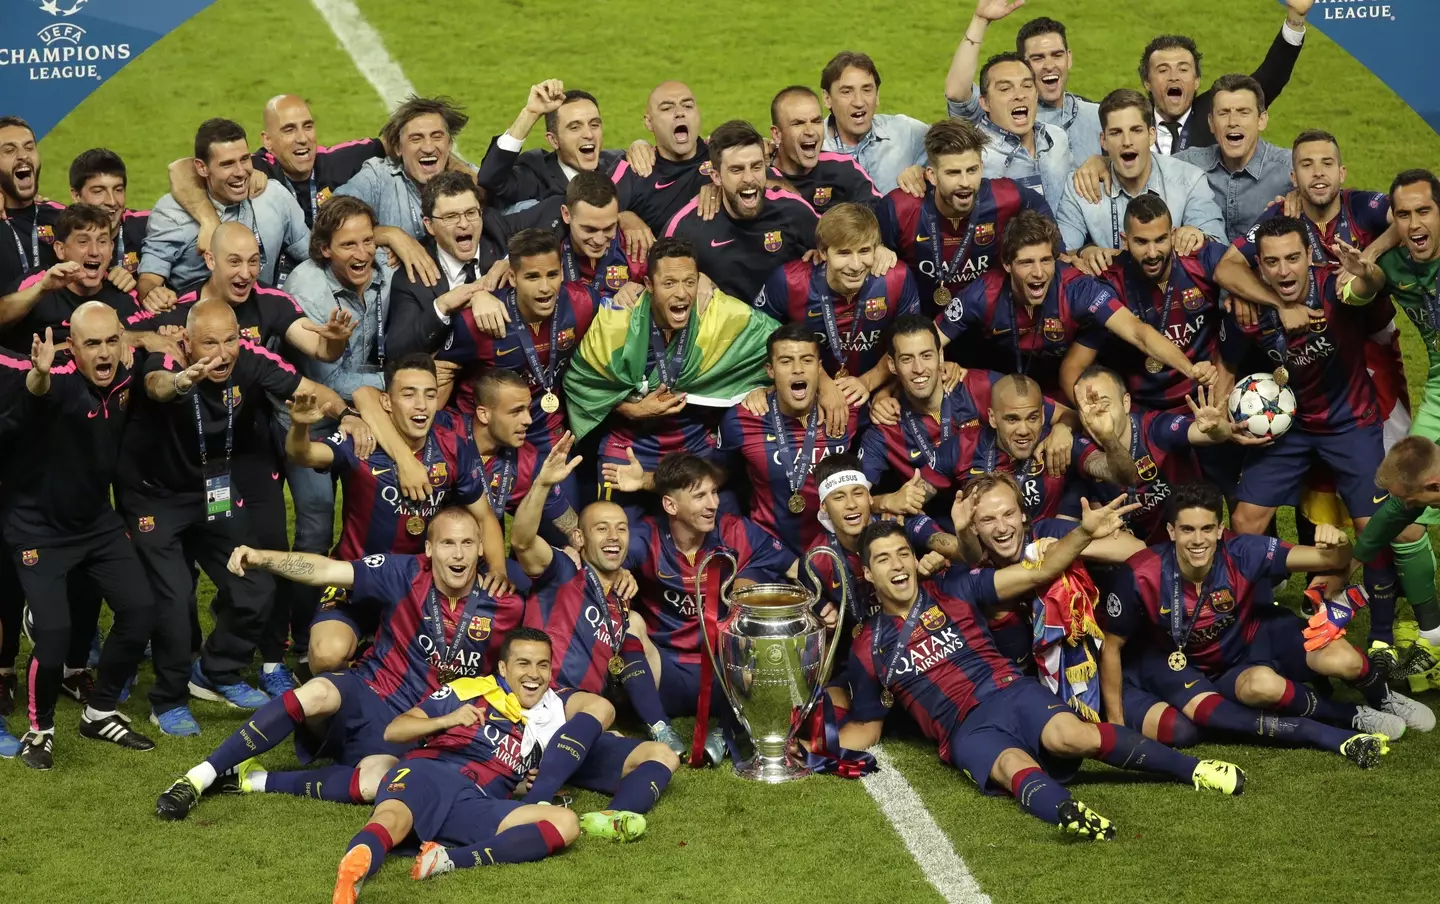 Barcelona's men haven't won the Champions League since 2015. Image: Alamy